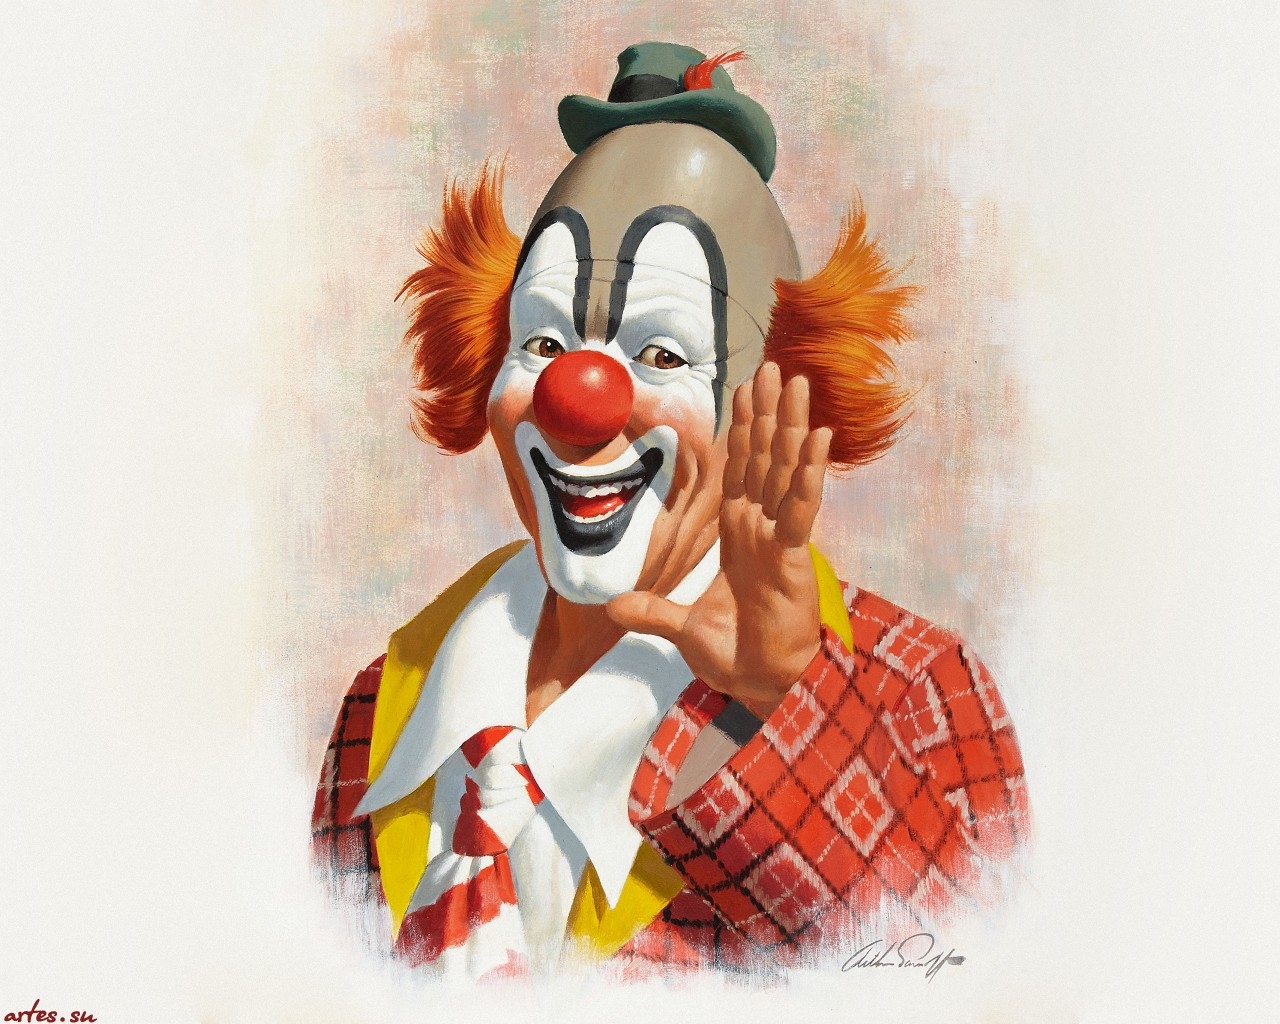 73+] Free Clown Wallpaper - WallpaperSafari